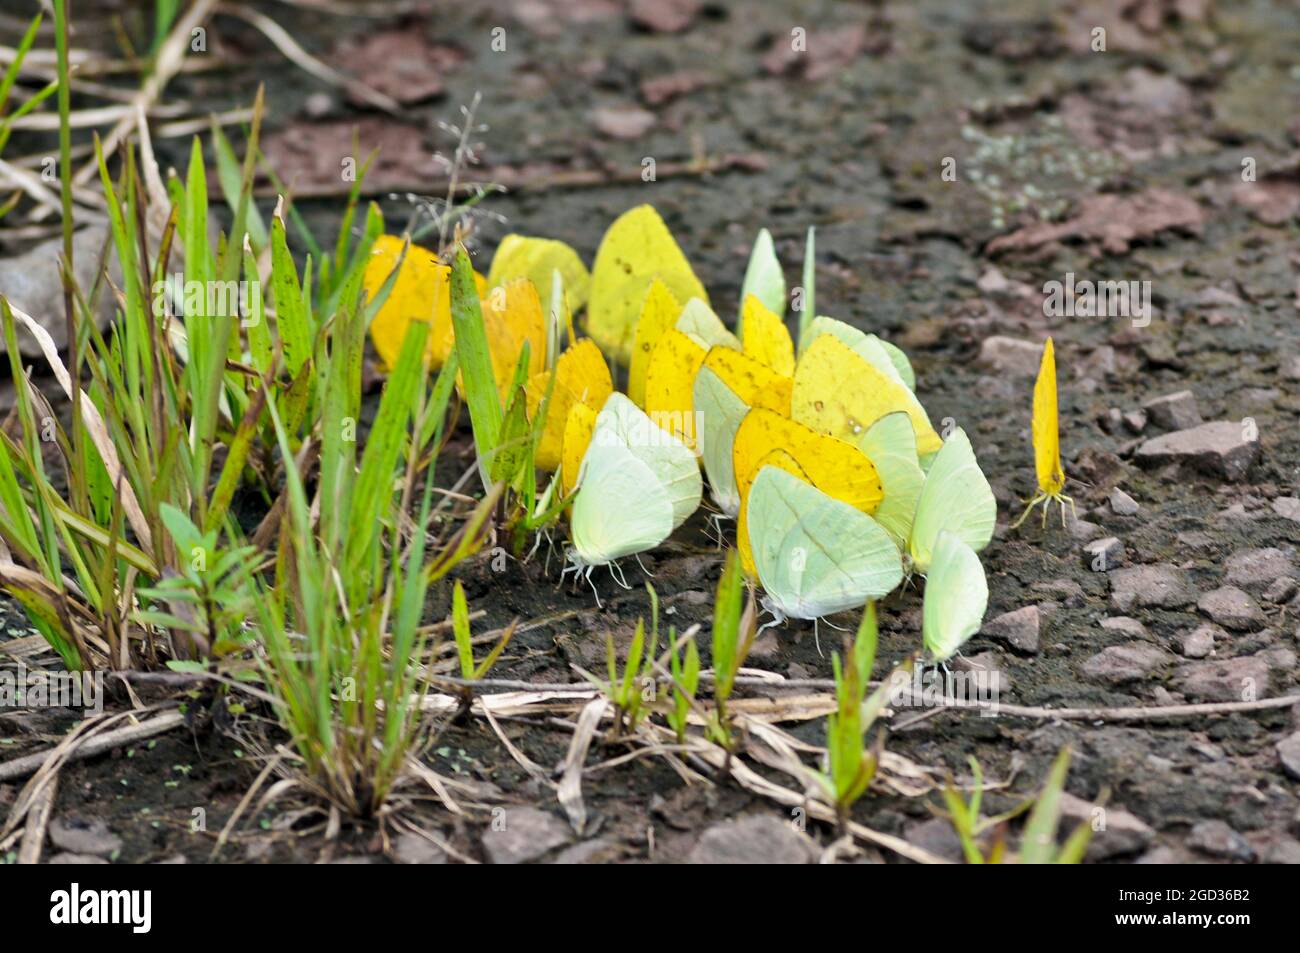 Papillons jaunes et verts d'Amérique du Sud. Parc national d'Iguazu, Misiones, Argentine Banque D'Images